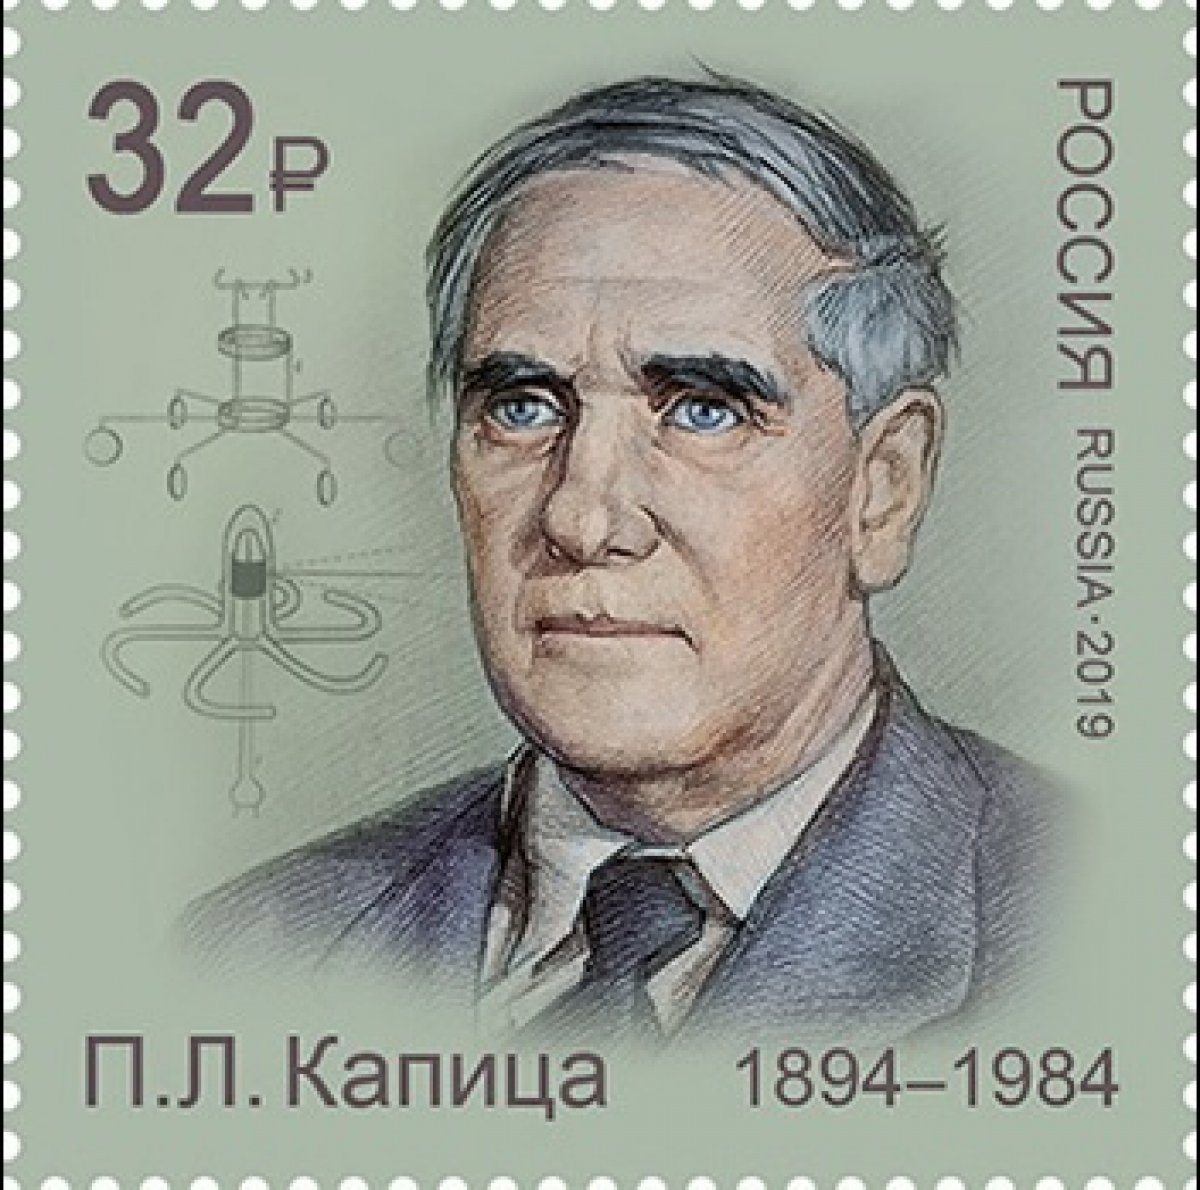 Сегодня в почтовое обращение вышла марка, посвященная ученому, лауреату Нобелевской премии и одному из основателей Физтеха Петру Капице.